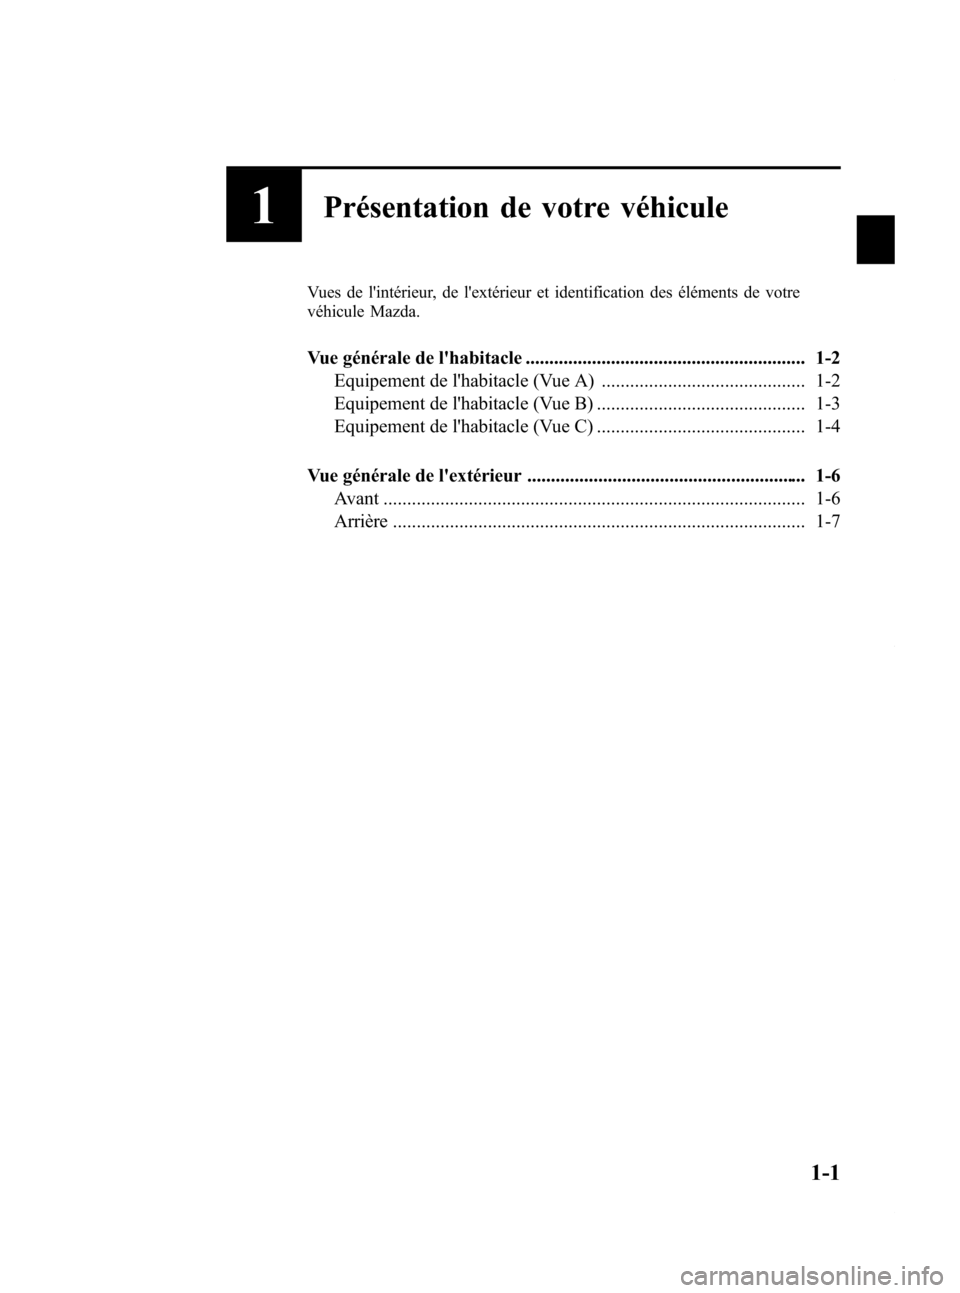 MAZDA MODEL CX-7 2009  Manuel du propriétaire (in French) Black plate (7,1)
1Présentation de votre véhicule
Vues de lintérieur, de lextérieur et identification des éléments de votre
véhicule Mazda.
Vue générale de lhabitacle .....................